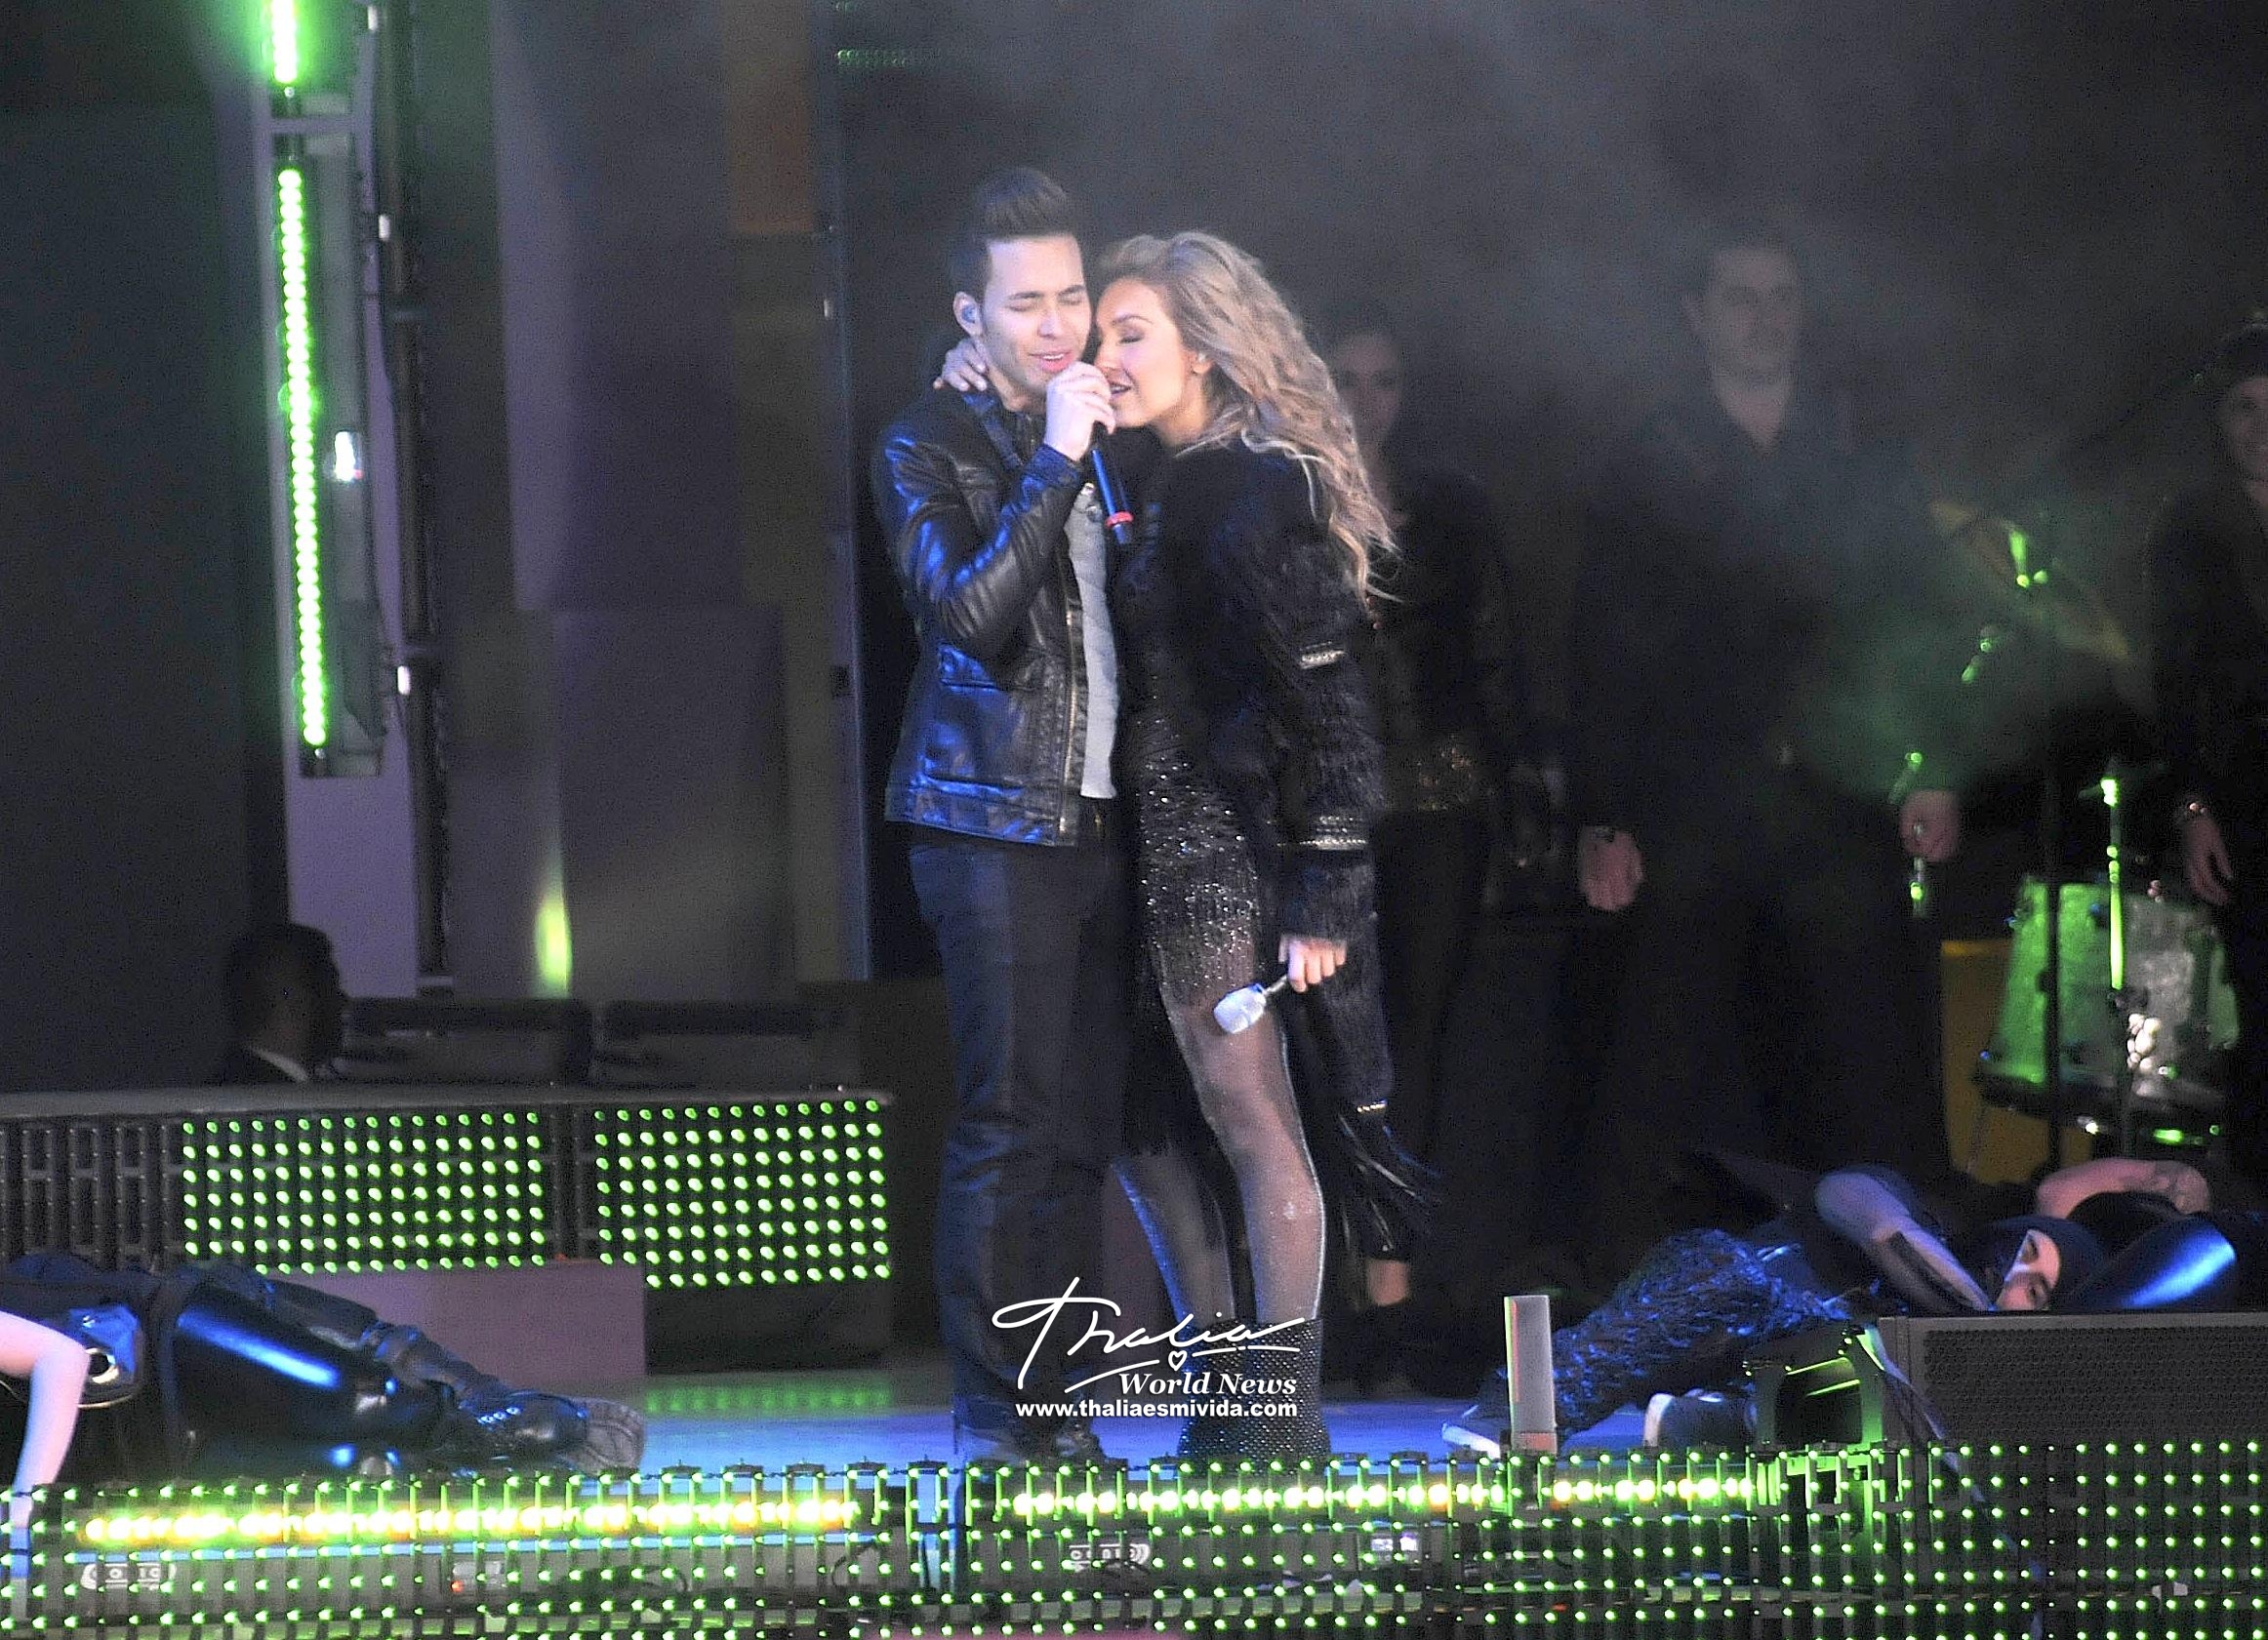 Thalía y Prince Royce compartieron de manera íntima sobre la tarima del Teletón 2013, que se realizó en México